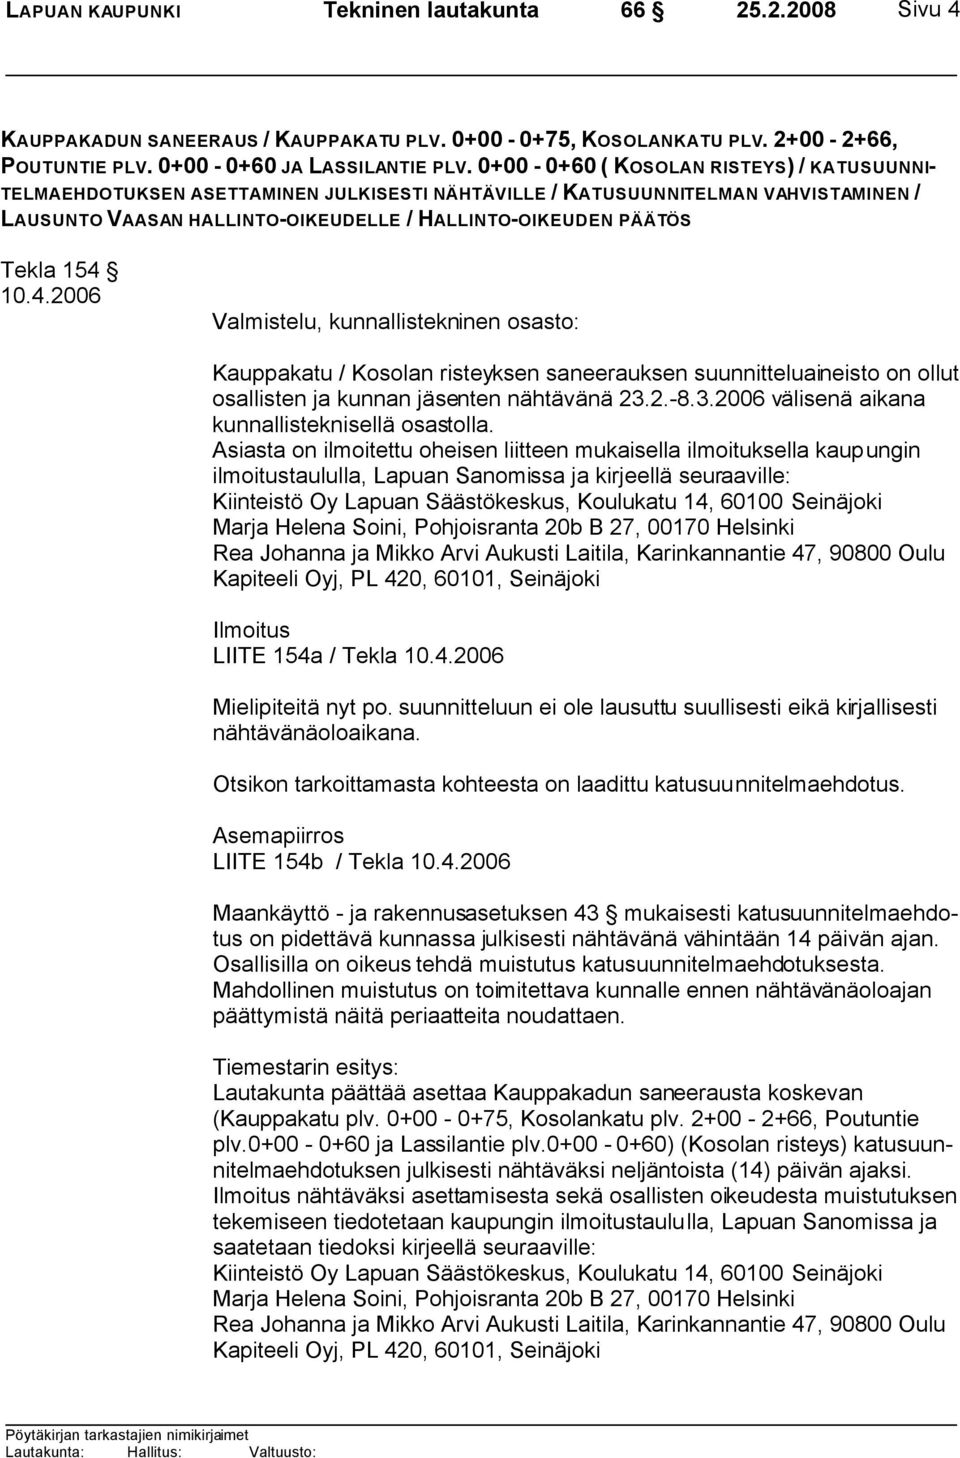 154 10.4.2006 Valmistelu, kunnallistekninen osasto: Kauppakatu / Kosolan risteyksen saneerauksen suunnitteluaineisto on ollut osallisten ja kunnan jäsenten nähtävänä 23.